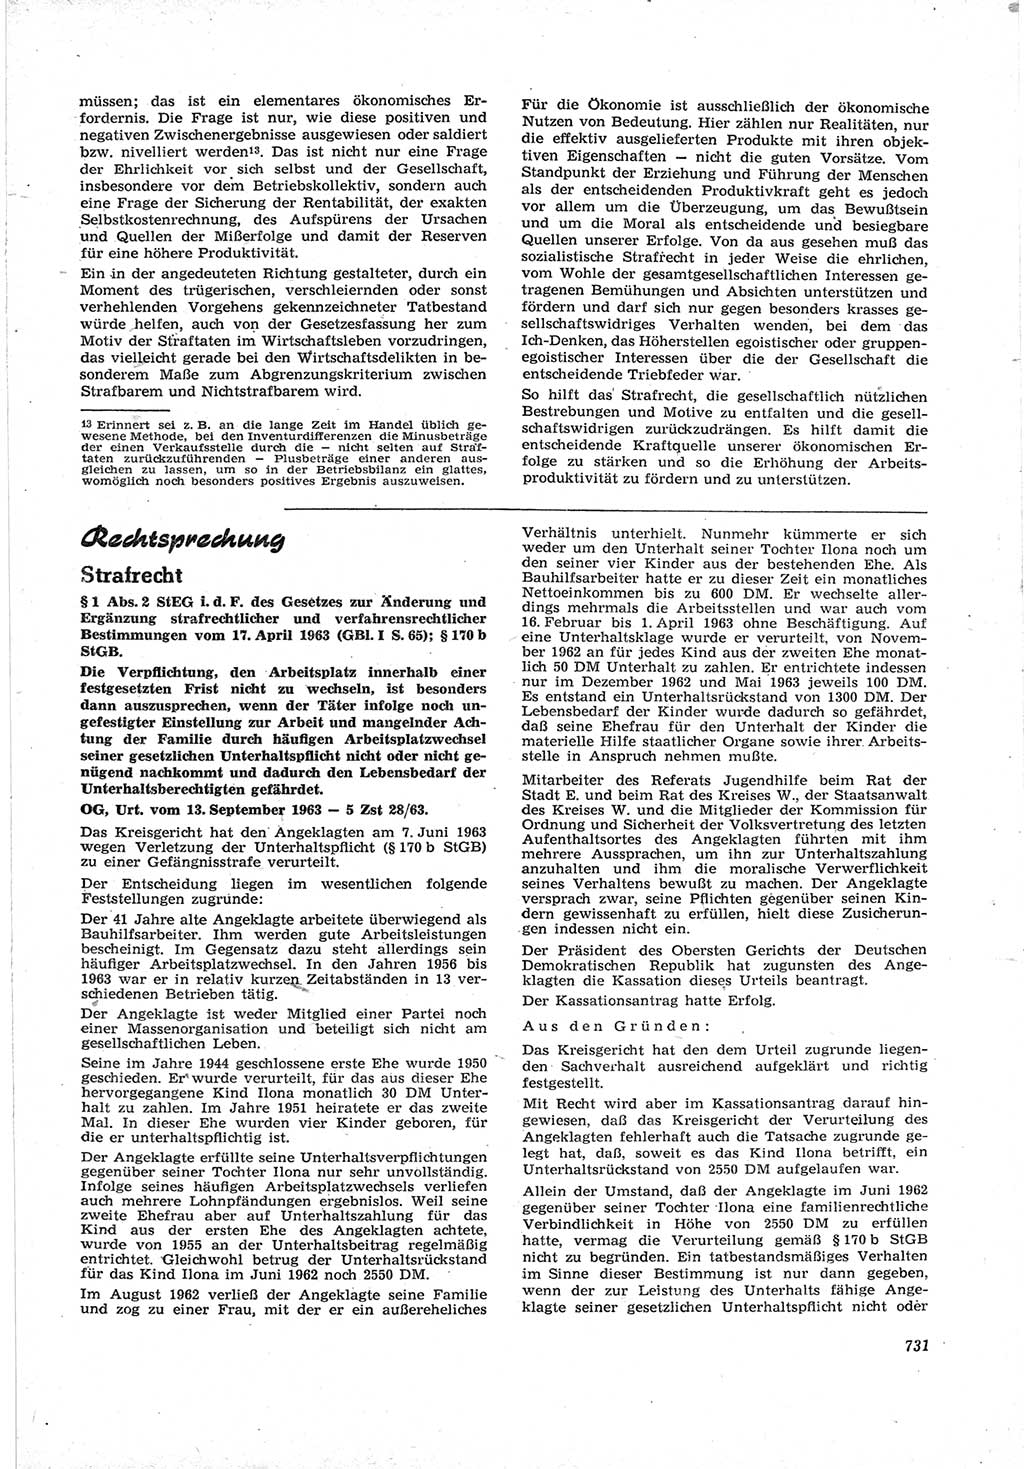 Neue Justiz (NJ), Zeitschrift für Recht und Rechtswissenschaft [Deutsche Demokratische Republik (DDR)], 17. Jahrgang 1963, Seite 731 (NJ DDR 1963, S. 731)